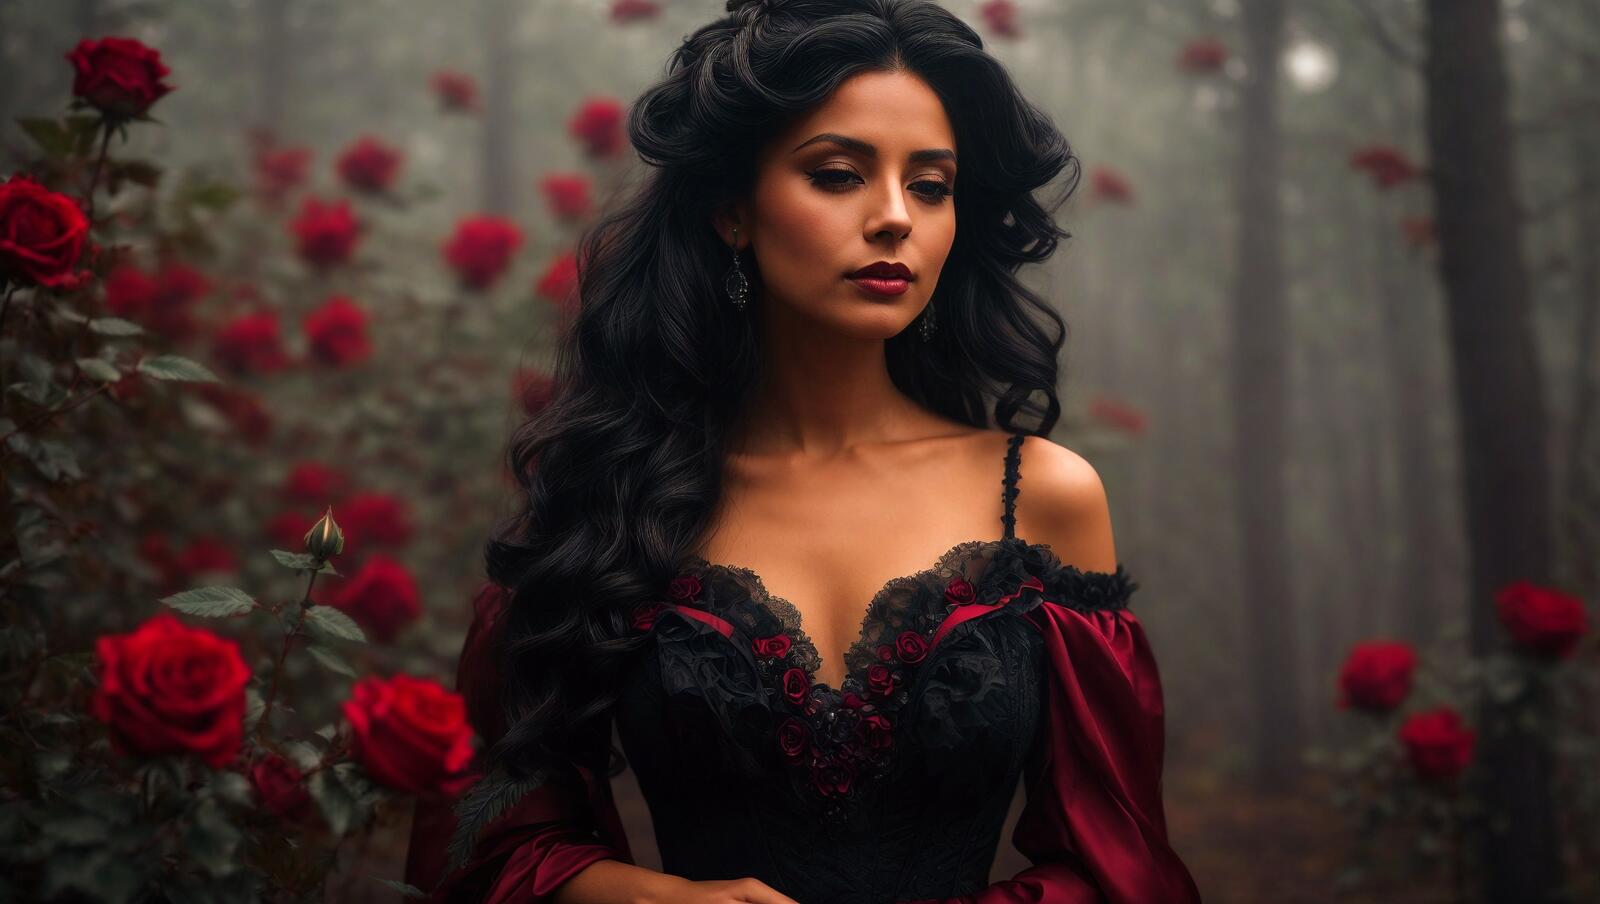 Бесплатное фото Женщина с длинными волосами в черном платье окружена красными розами